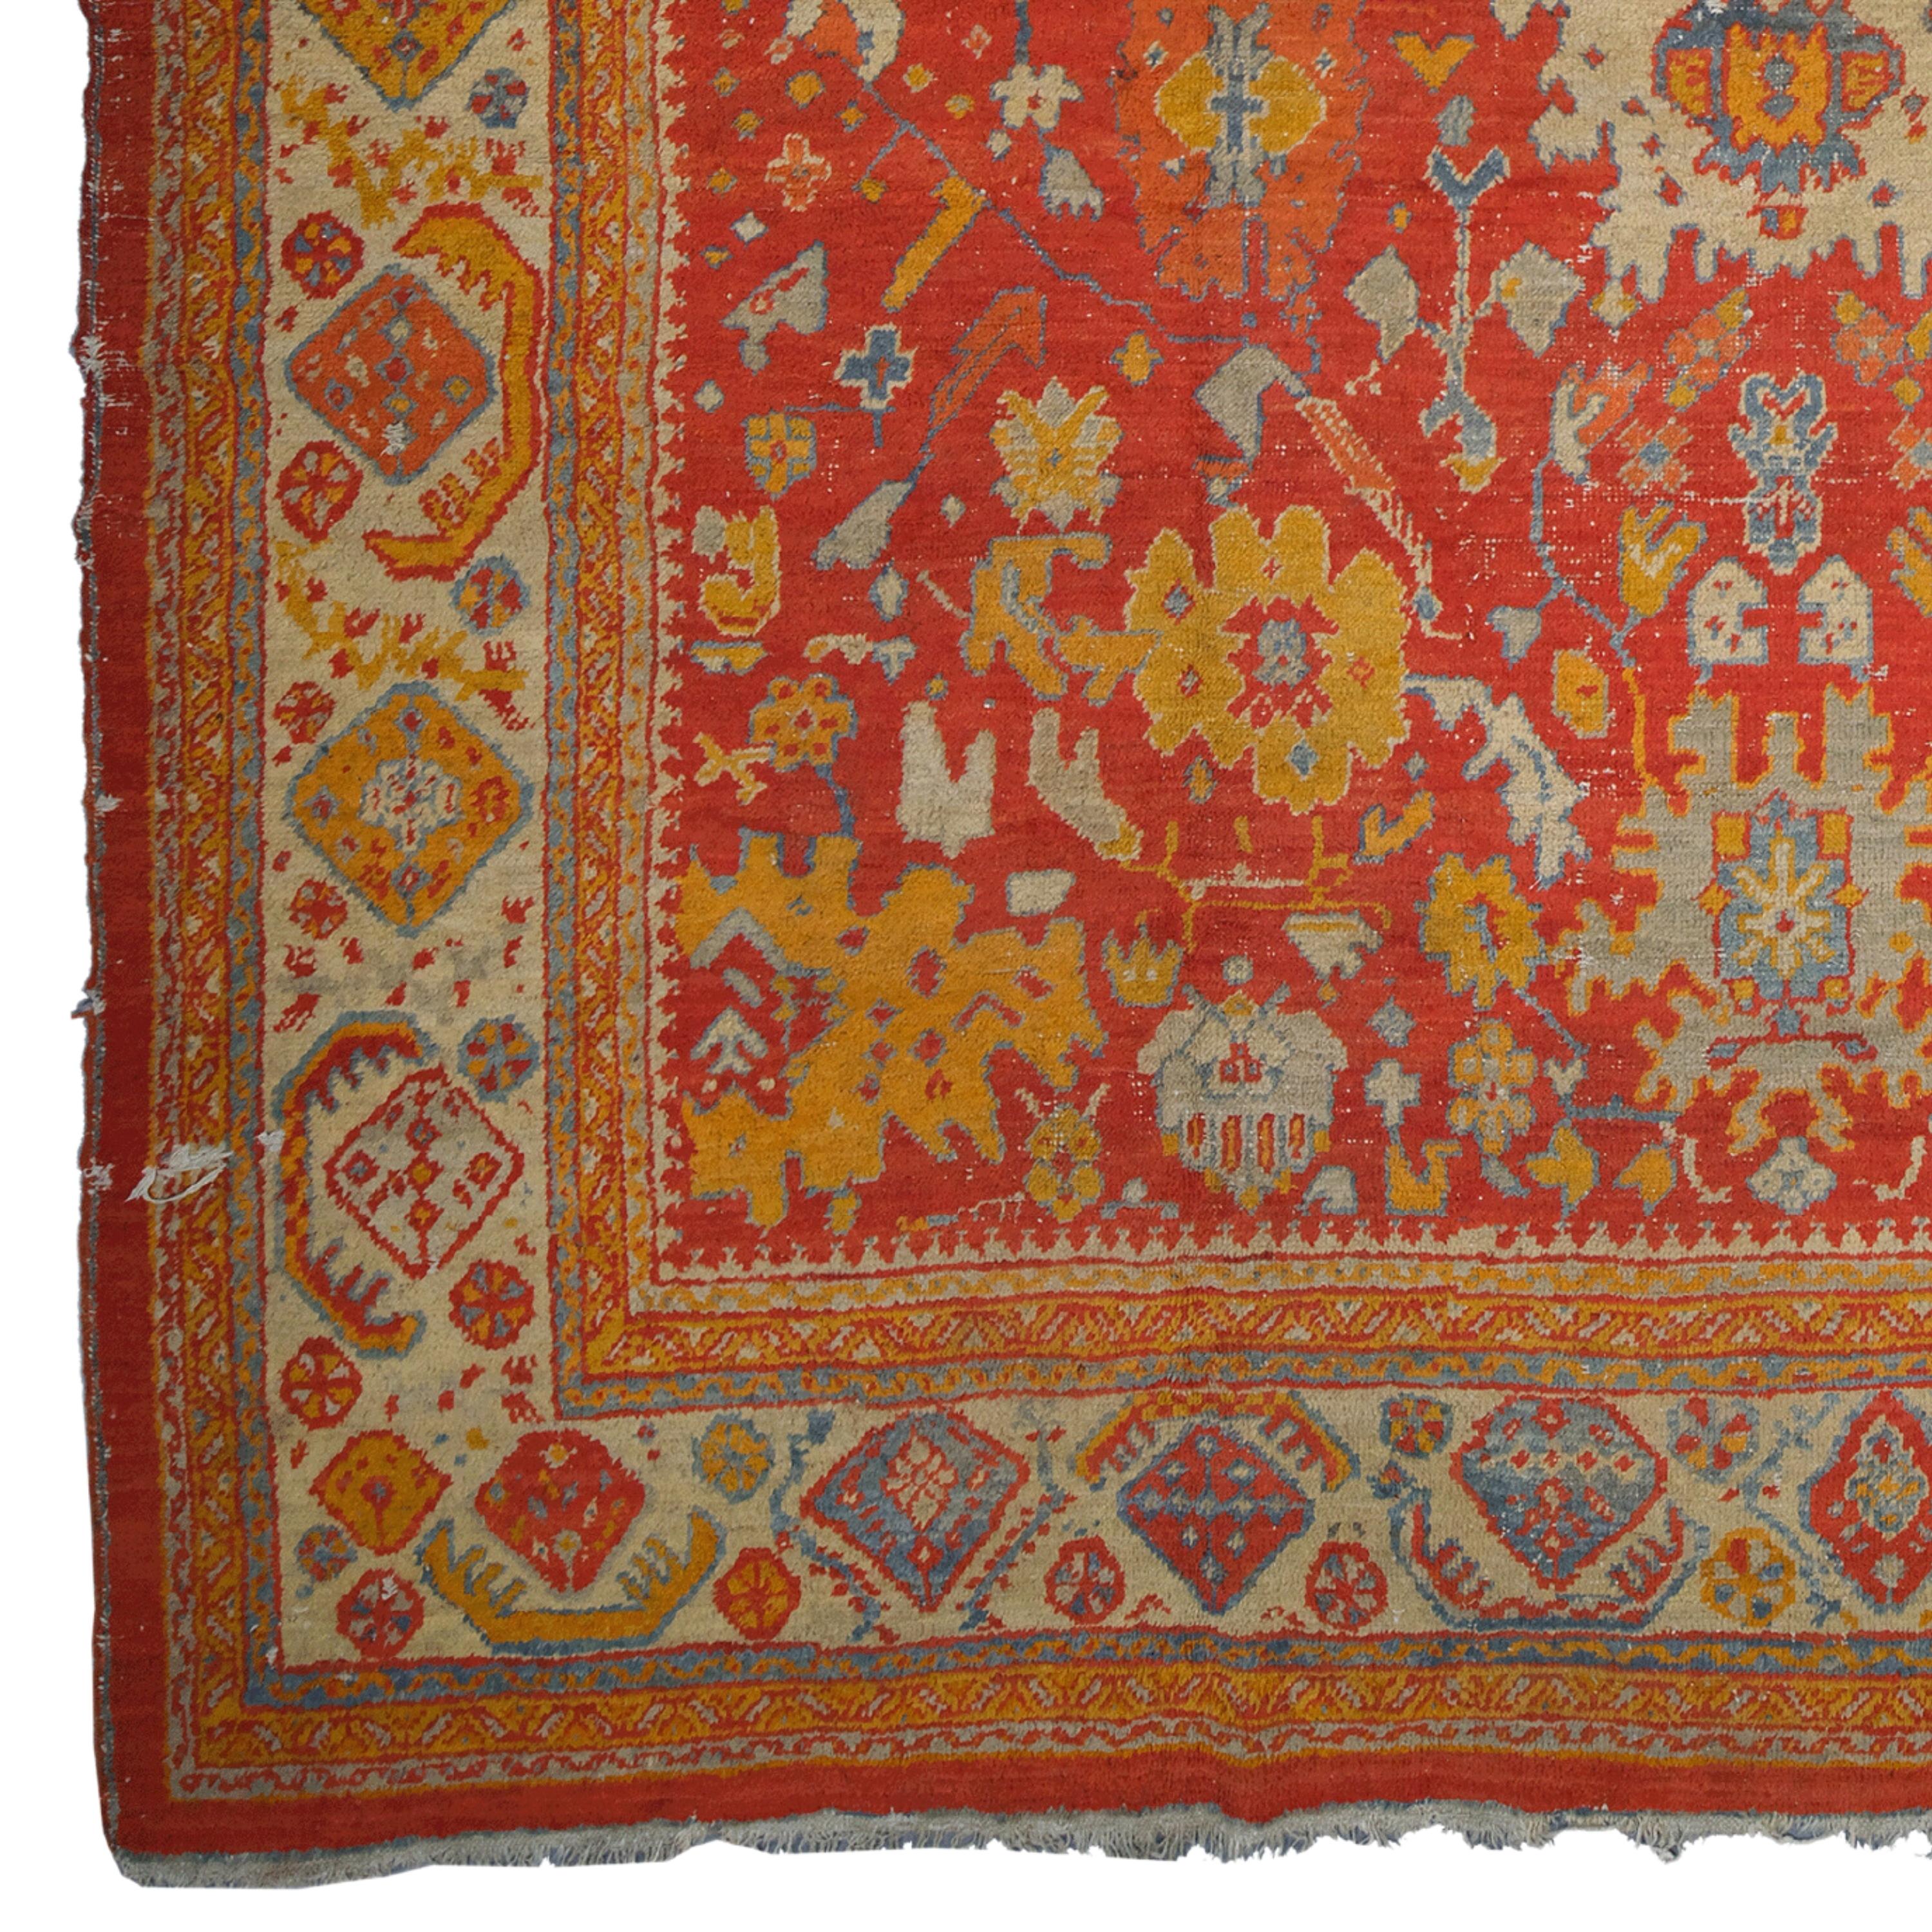 Osmanische Eleganz: Antike Ghordes-Teppiche aus dem Ende des 19. Jahrhunderts

Wenn Sie Ihr Zuhause historisch und künstlerisch aufwerten wollen, ist dieser antike Teppich genau das Richtige für Sie. Dieser Teppich ist ein Ghordes-Teppich, der Ende